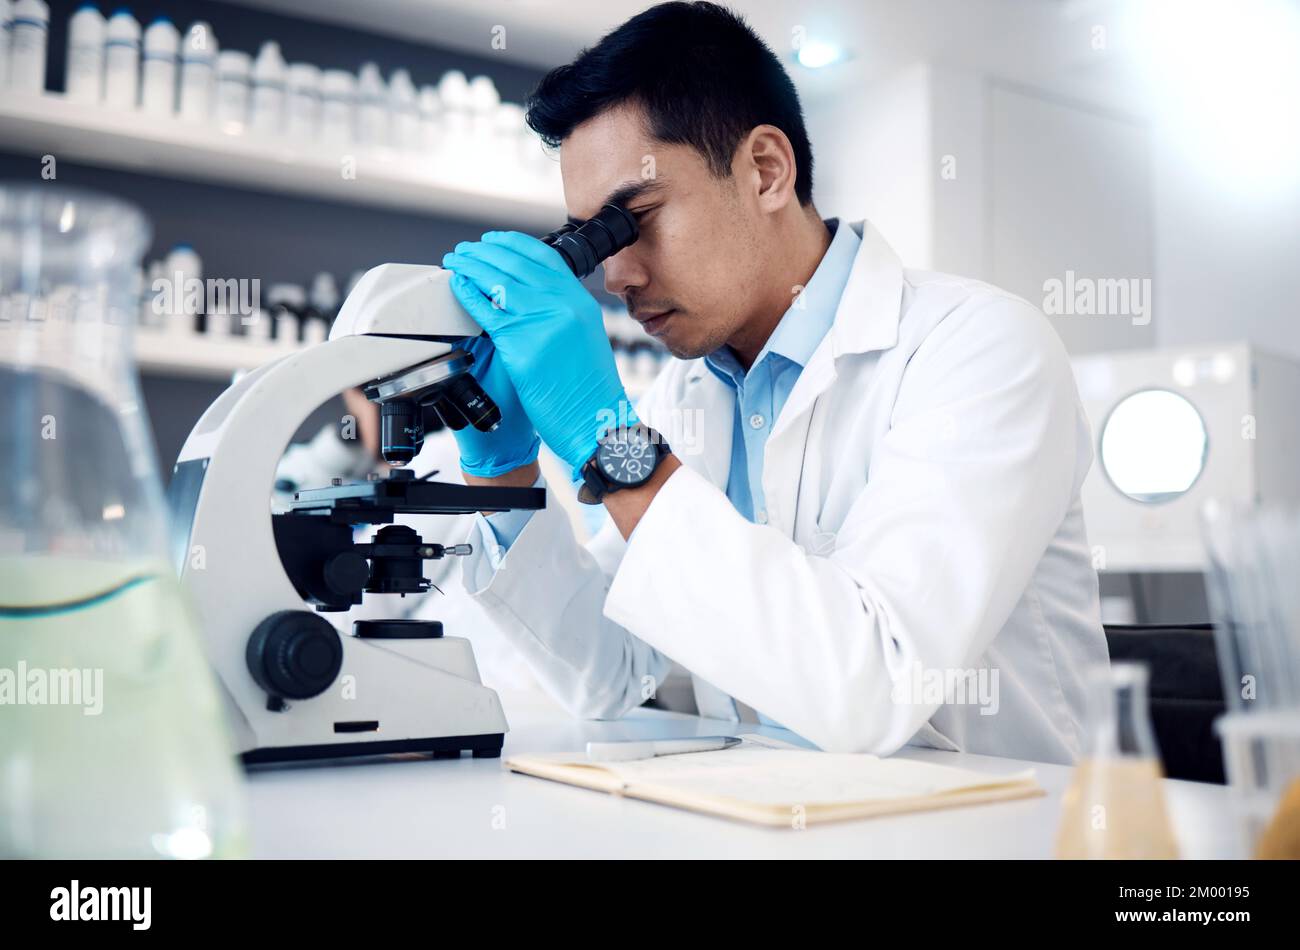 Microscope, homme asiatique en laboratoire pour les soins de santé, les méthodes scientifiques et l'innovation en recherche. Homme chercheur, chimiste et médecin Banque D'Images